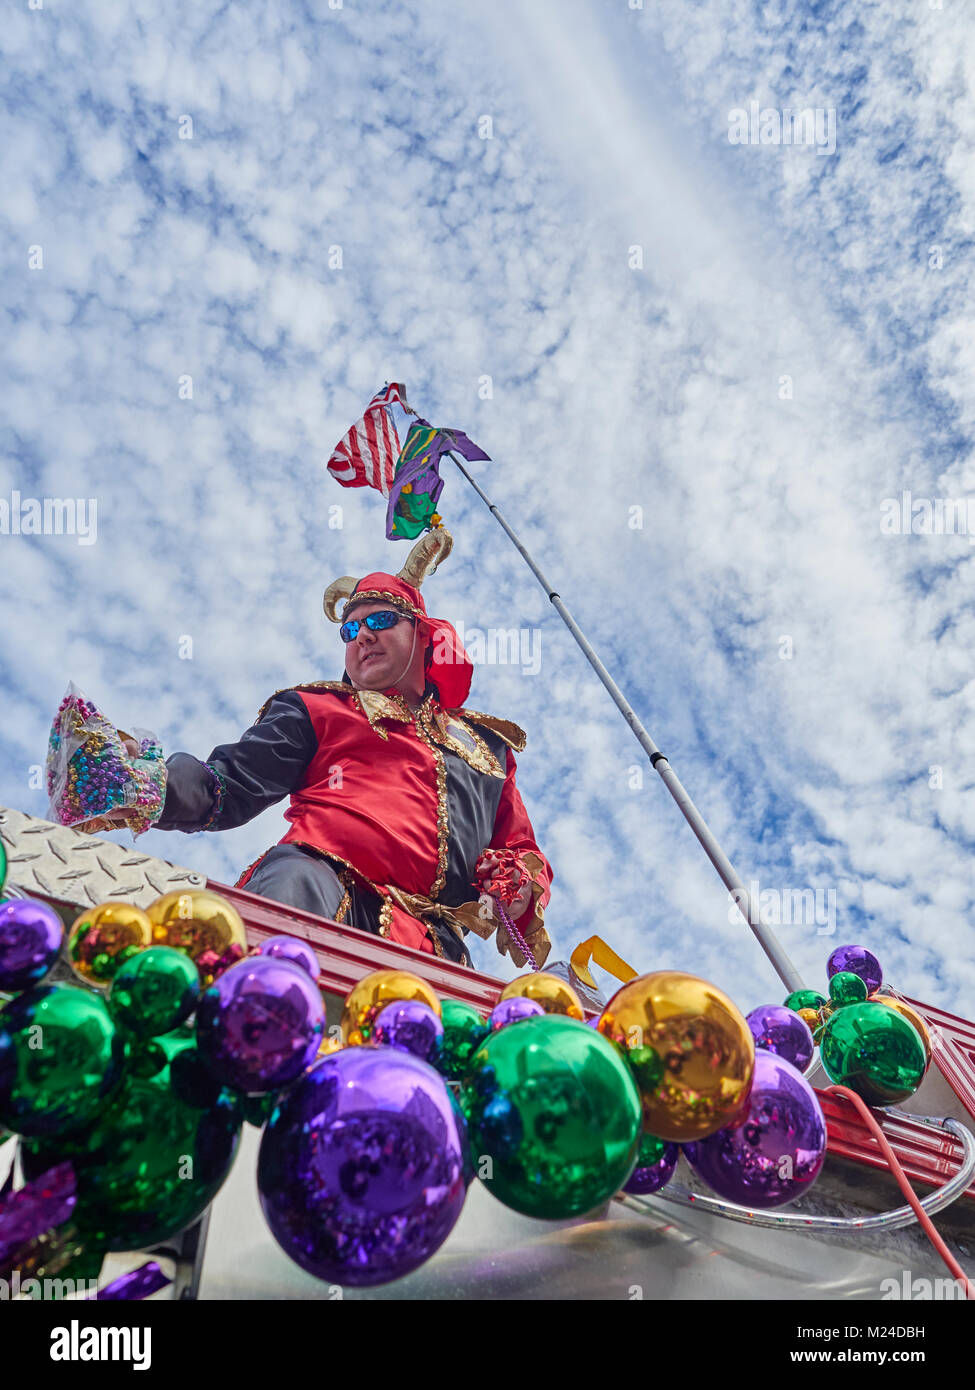 Mardi Gras jester auf einem Löschfahrzeug mit Mardi Gras Perlen dekoriert wirft eine Handvoll Perlen zu einer Masse an der Feier in Montgomery Alabama, USA. Stockfoto